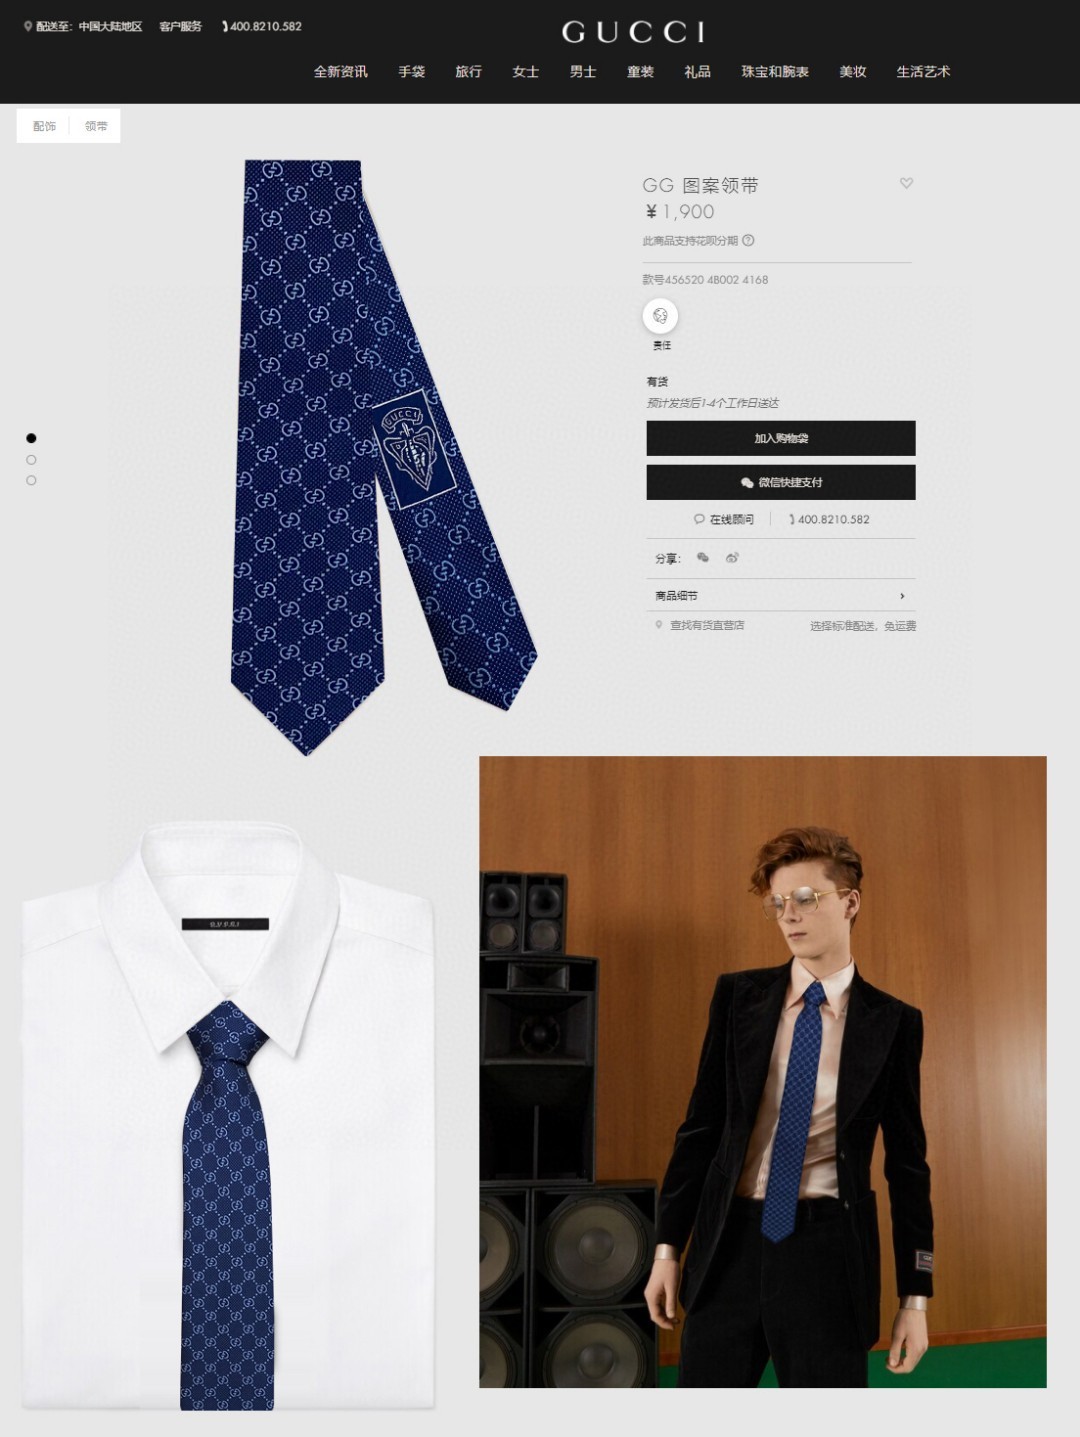 特价G家男士领带系列GG老花图案领带稀有采用经典小GLOGO提花展现精湛手工与时尚优雅的理想选择这款领带